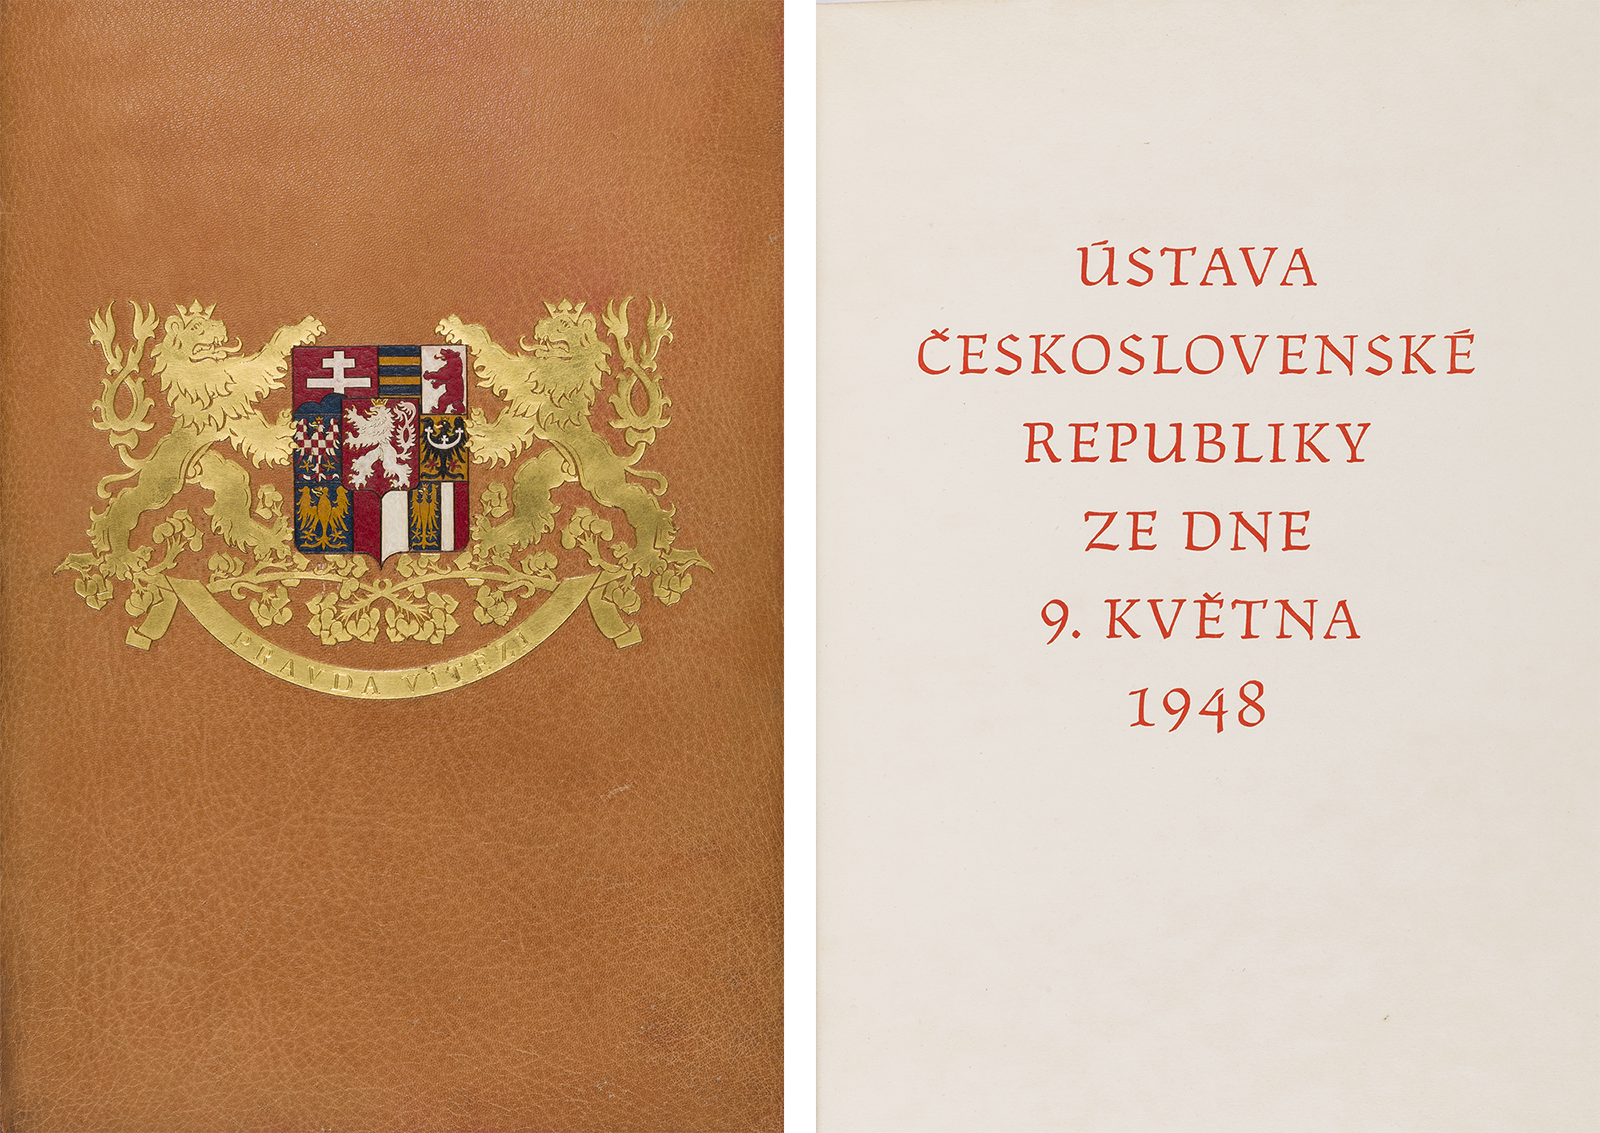 Originál ústavy 9. května uložený v Archivu Poslanecké sněmovny [2]